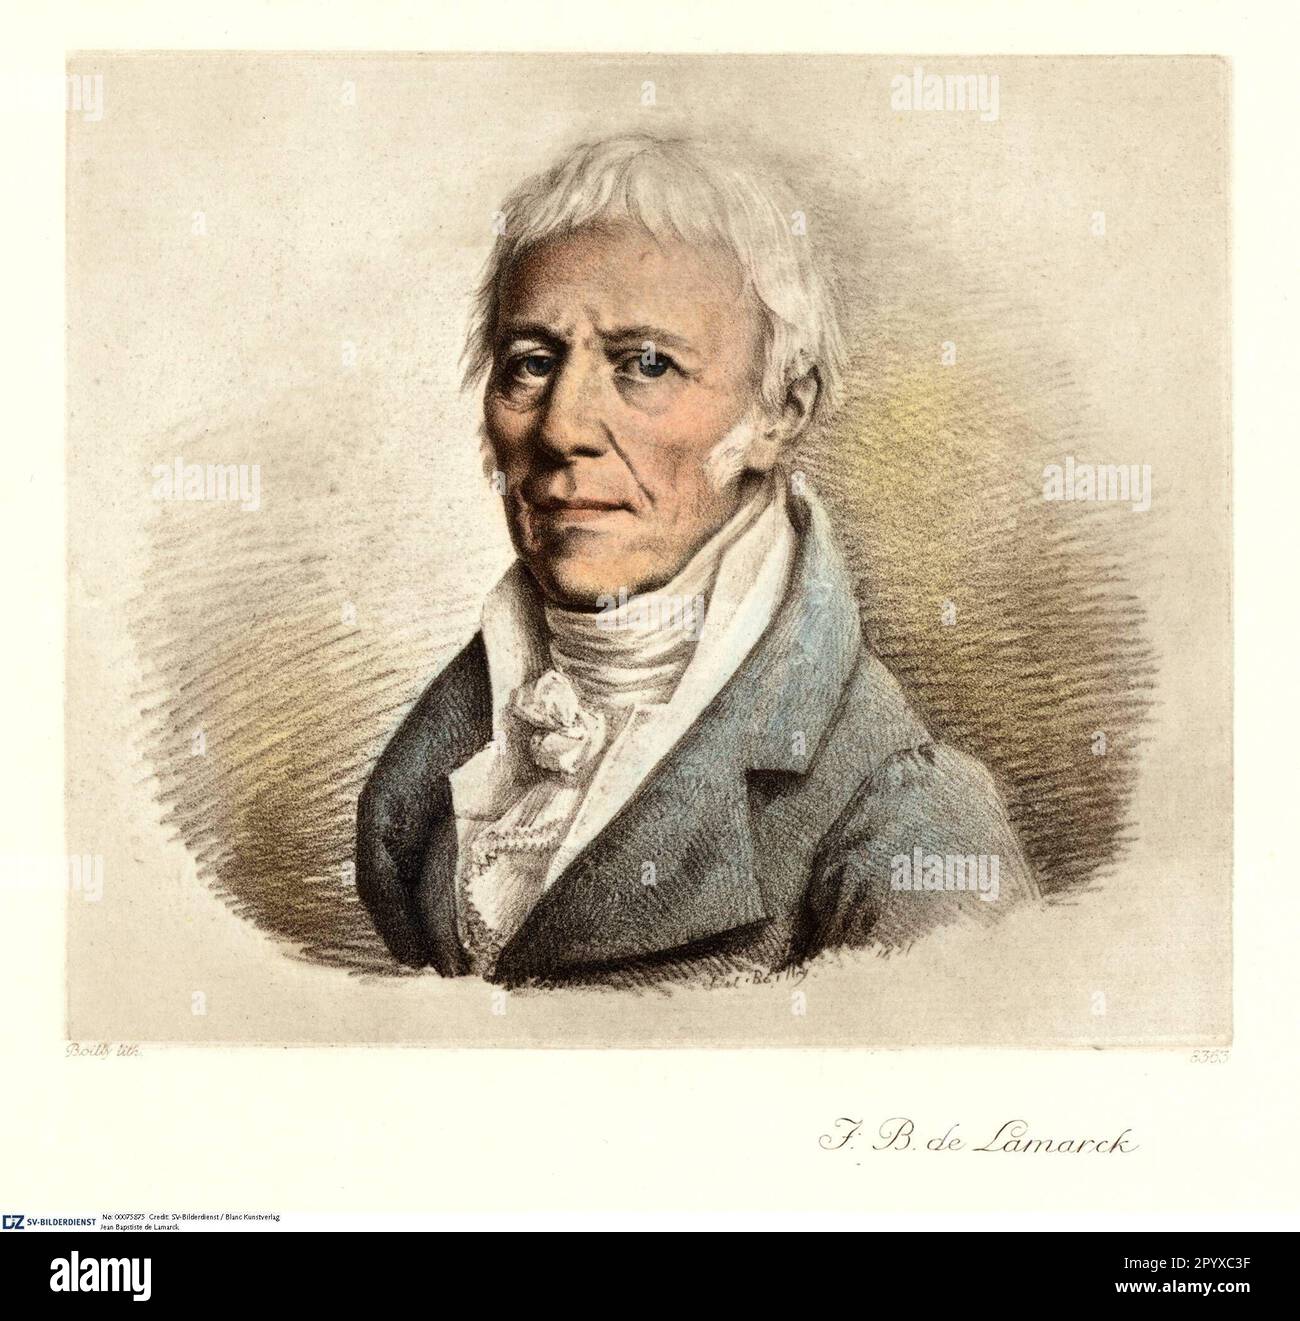 Jean Baptiste Pierre Antoine de Monet, Ritter von Lamarck (1744-1829), französischer Naturforscher und Zoologe. Lamarck war einer der ersten , der 1802 den Begriff "Biologie" prägte . Lithograf von Boilly. Foto: Heliogravure, Corpus Imaginum, Hanfstaengl Collection. [Maschinelle Übersetzung]' Stockfoto